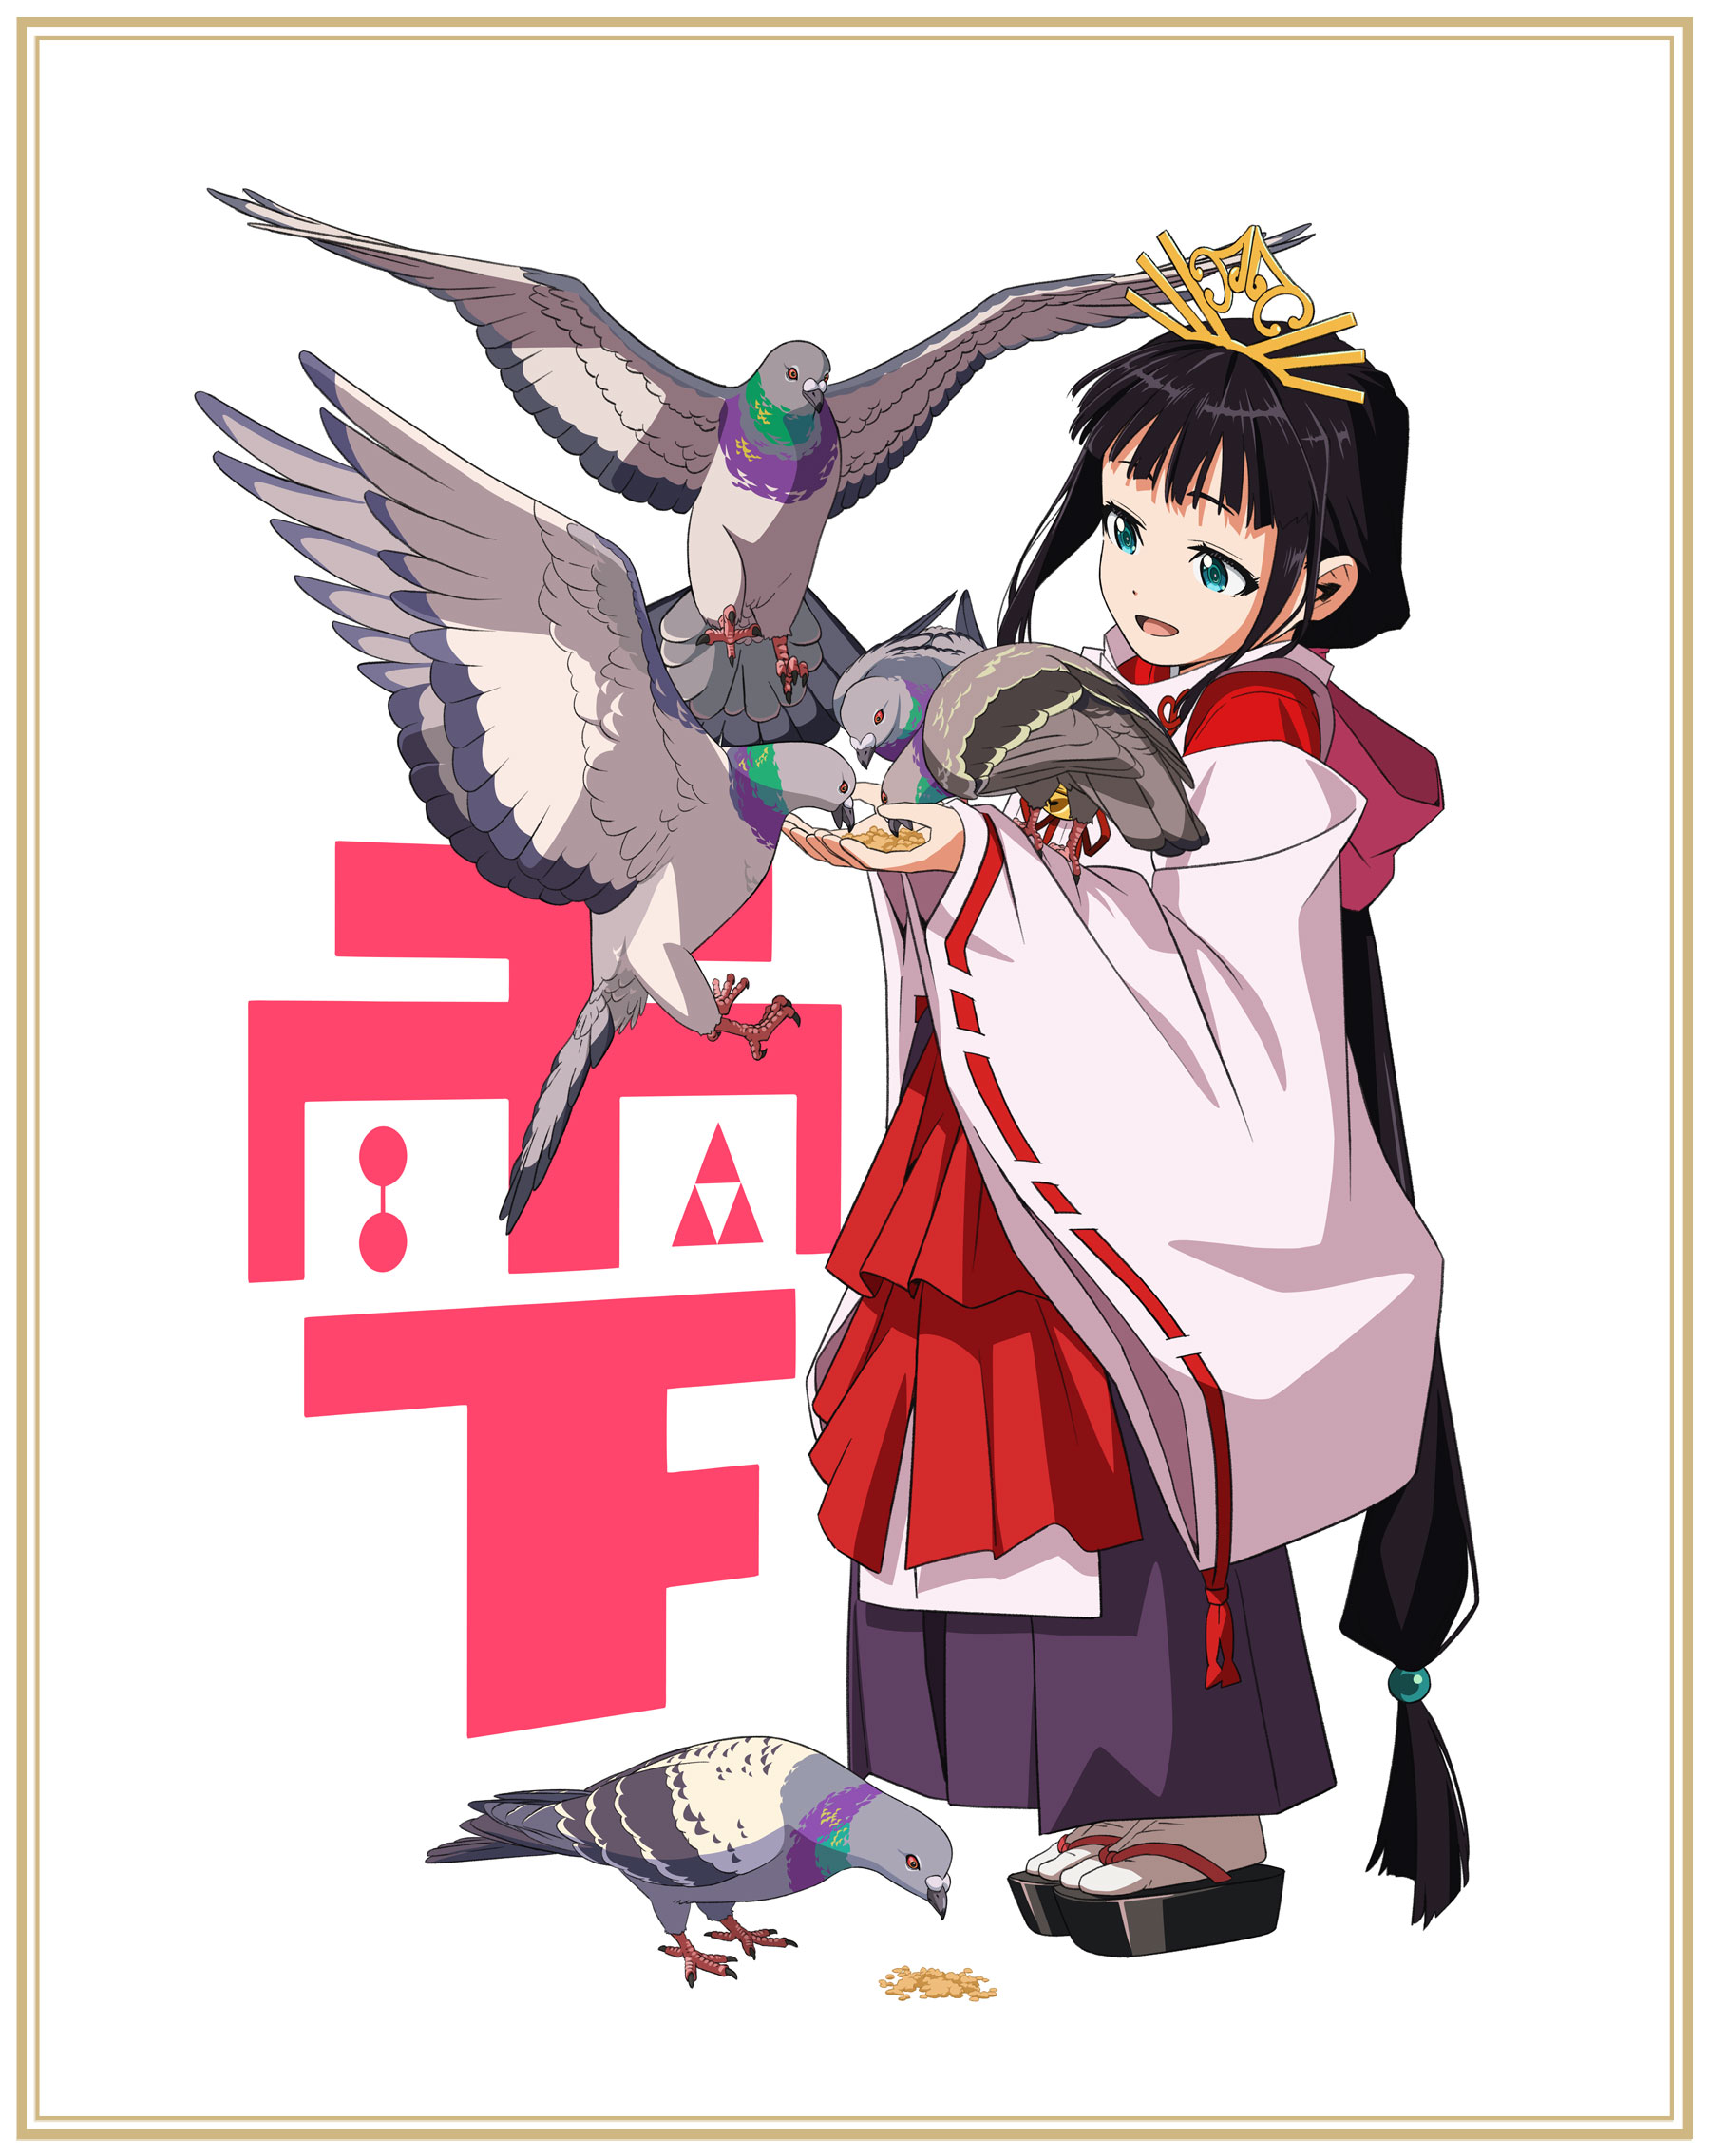 Tower of God - [Season 2] Ep. 147  Anime character design, Anime, Tower